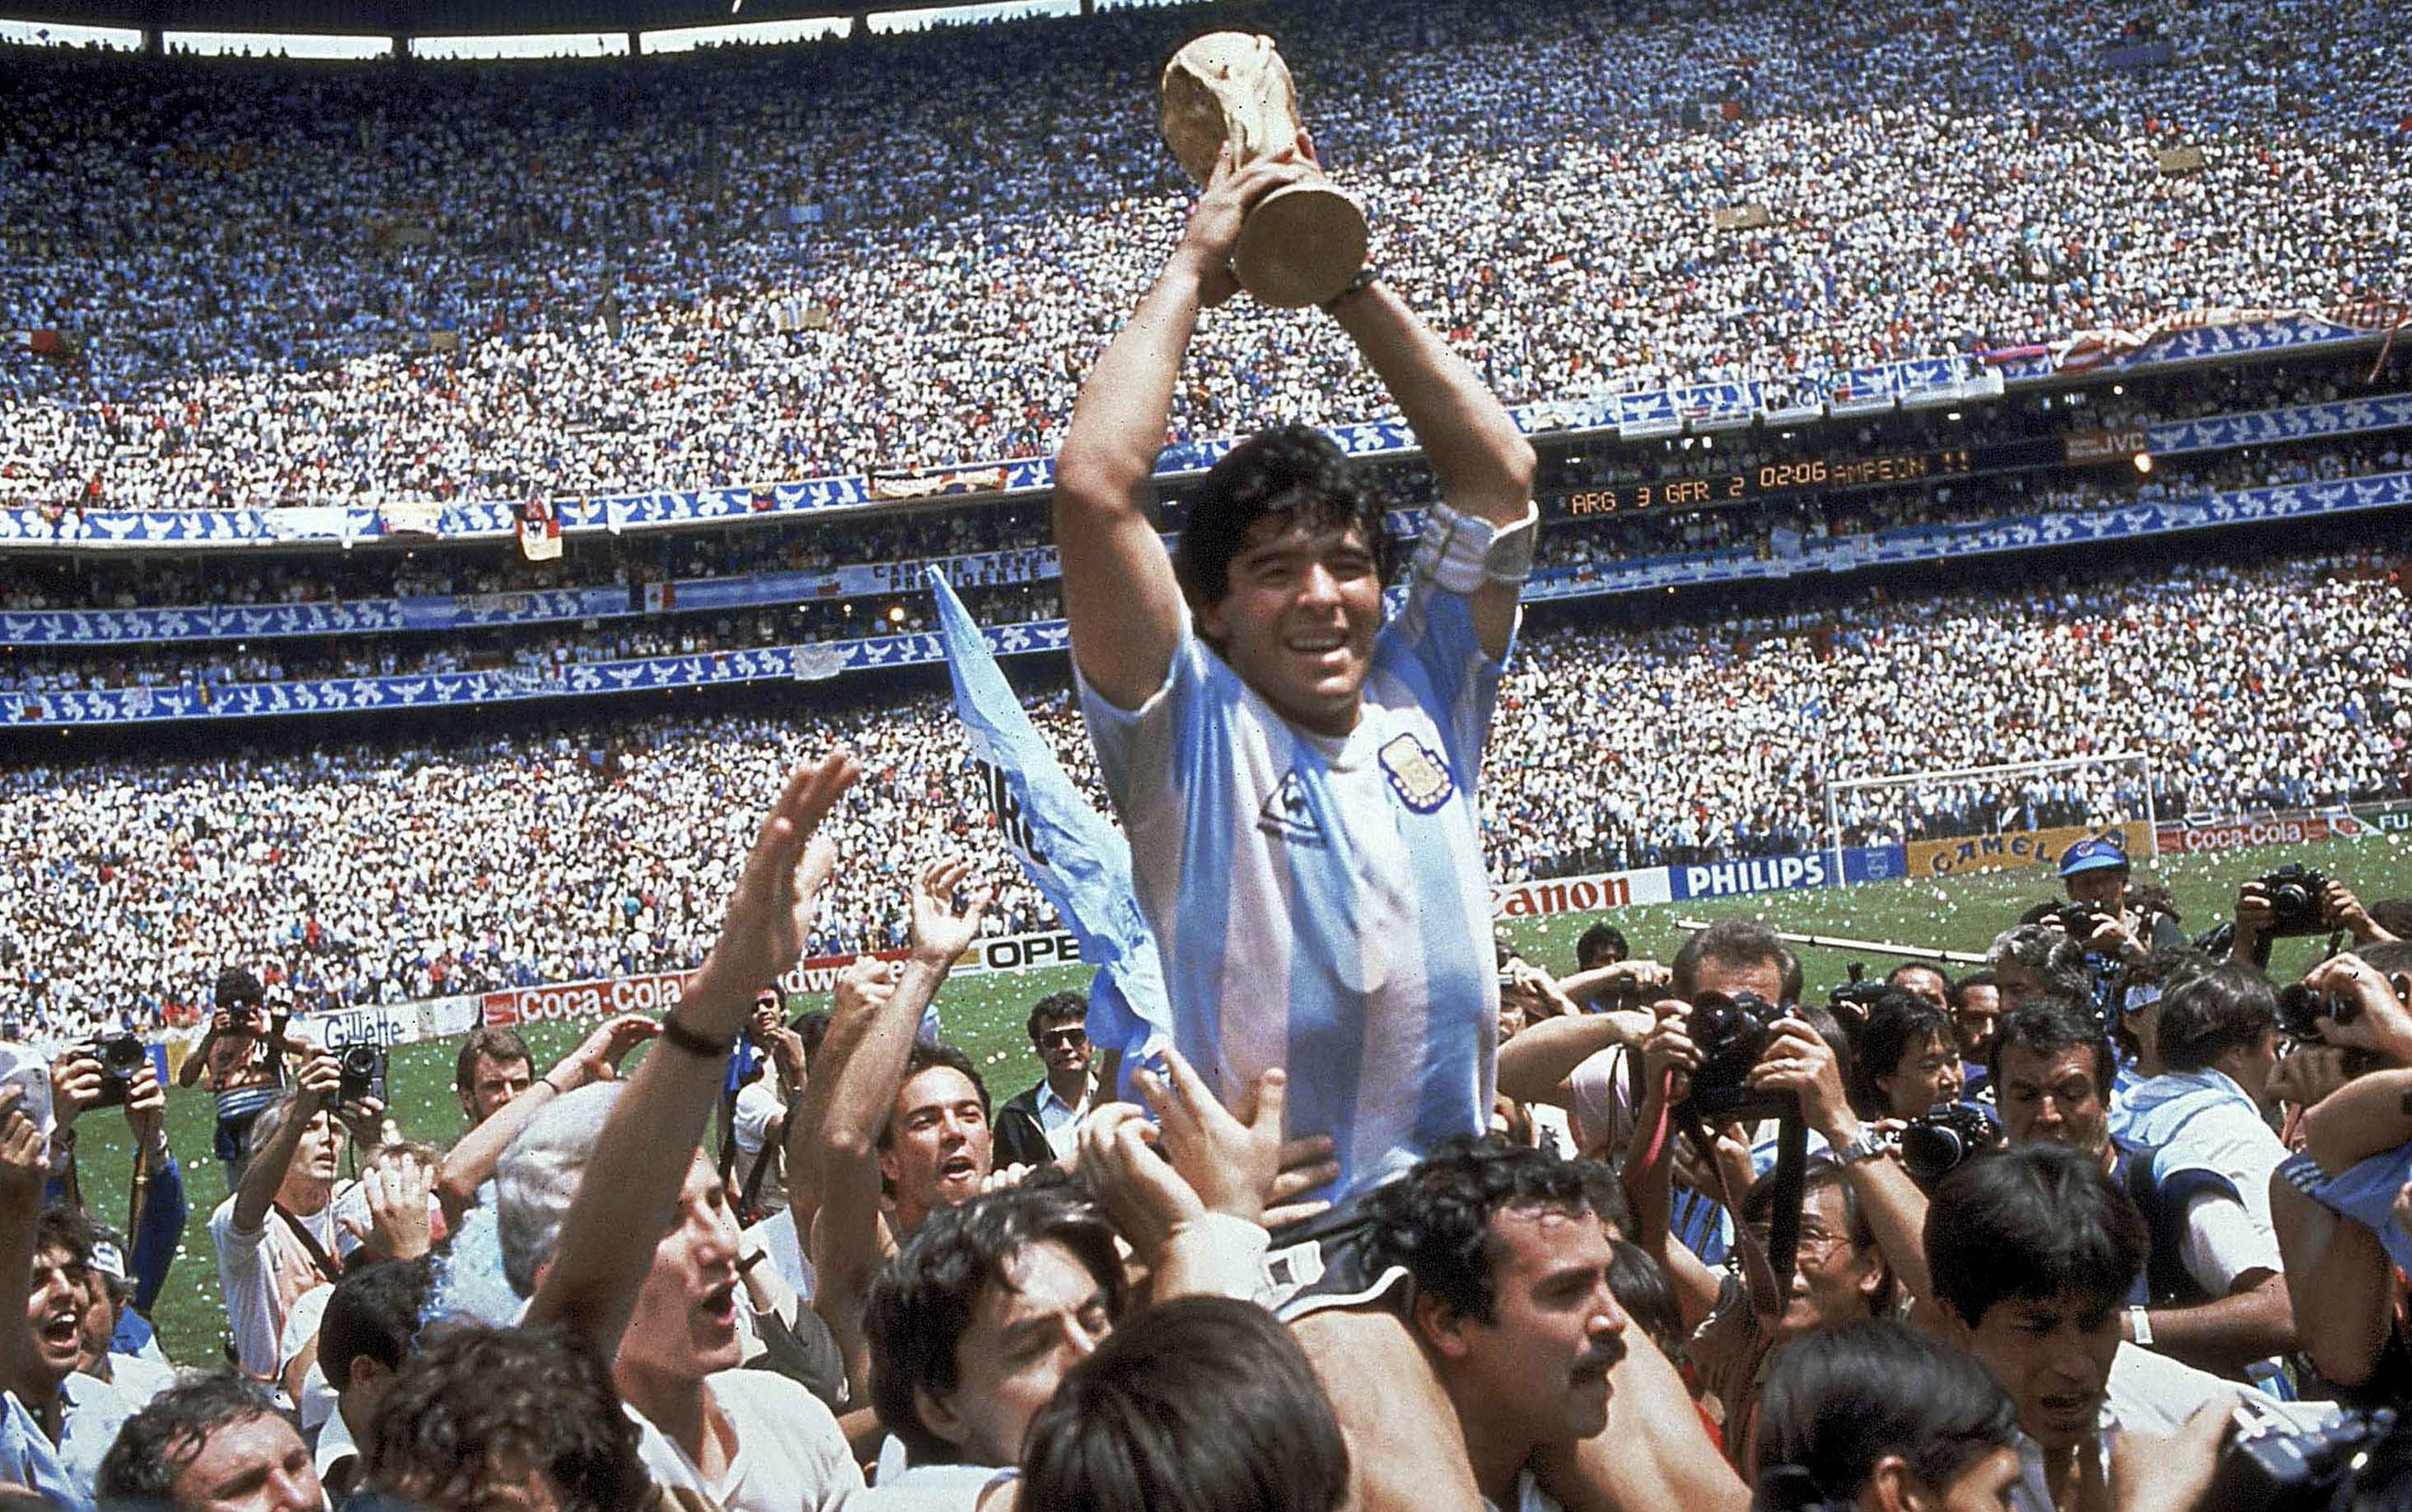 ÙØªÙØ¬Ø© Ø¨Ø­Ø« Ø§ÙØµÙØ± Ø¹Ù âªmaradona world cup 1986â¬â